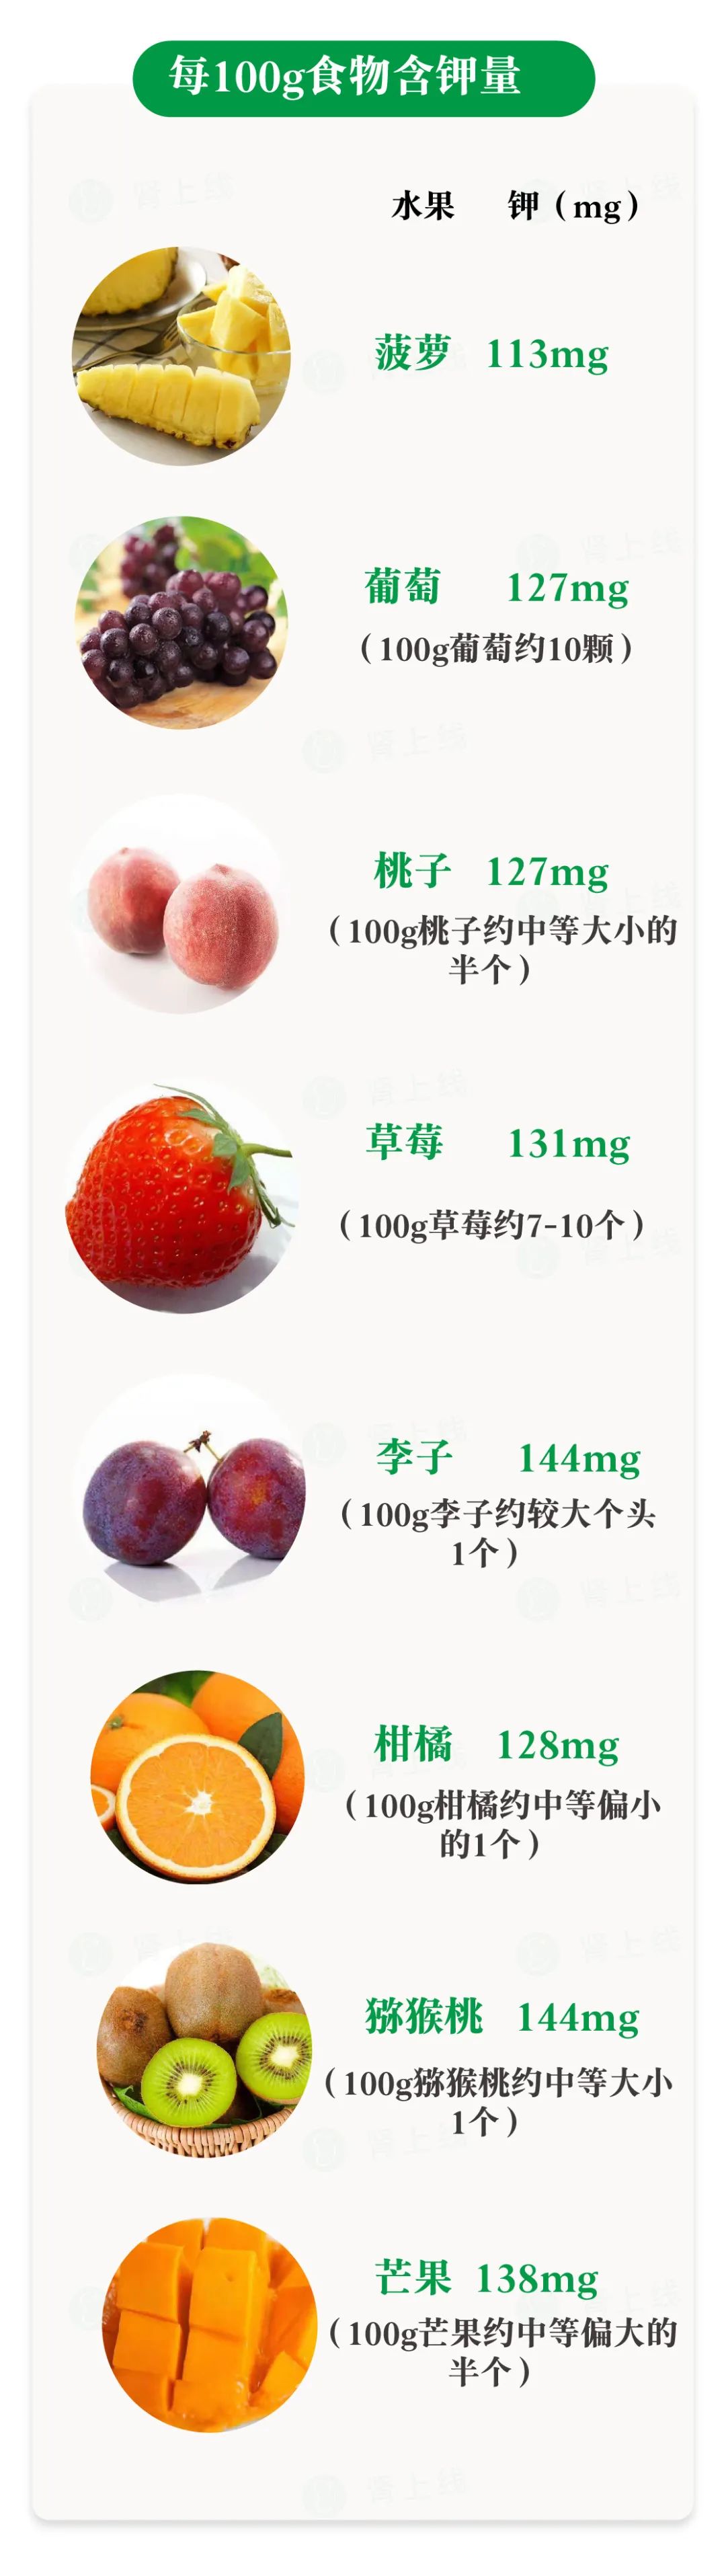 含钾高的水果一览表图片